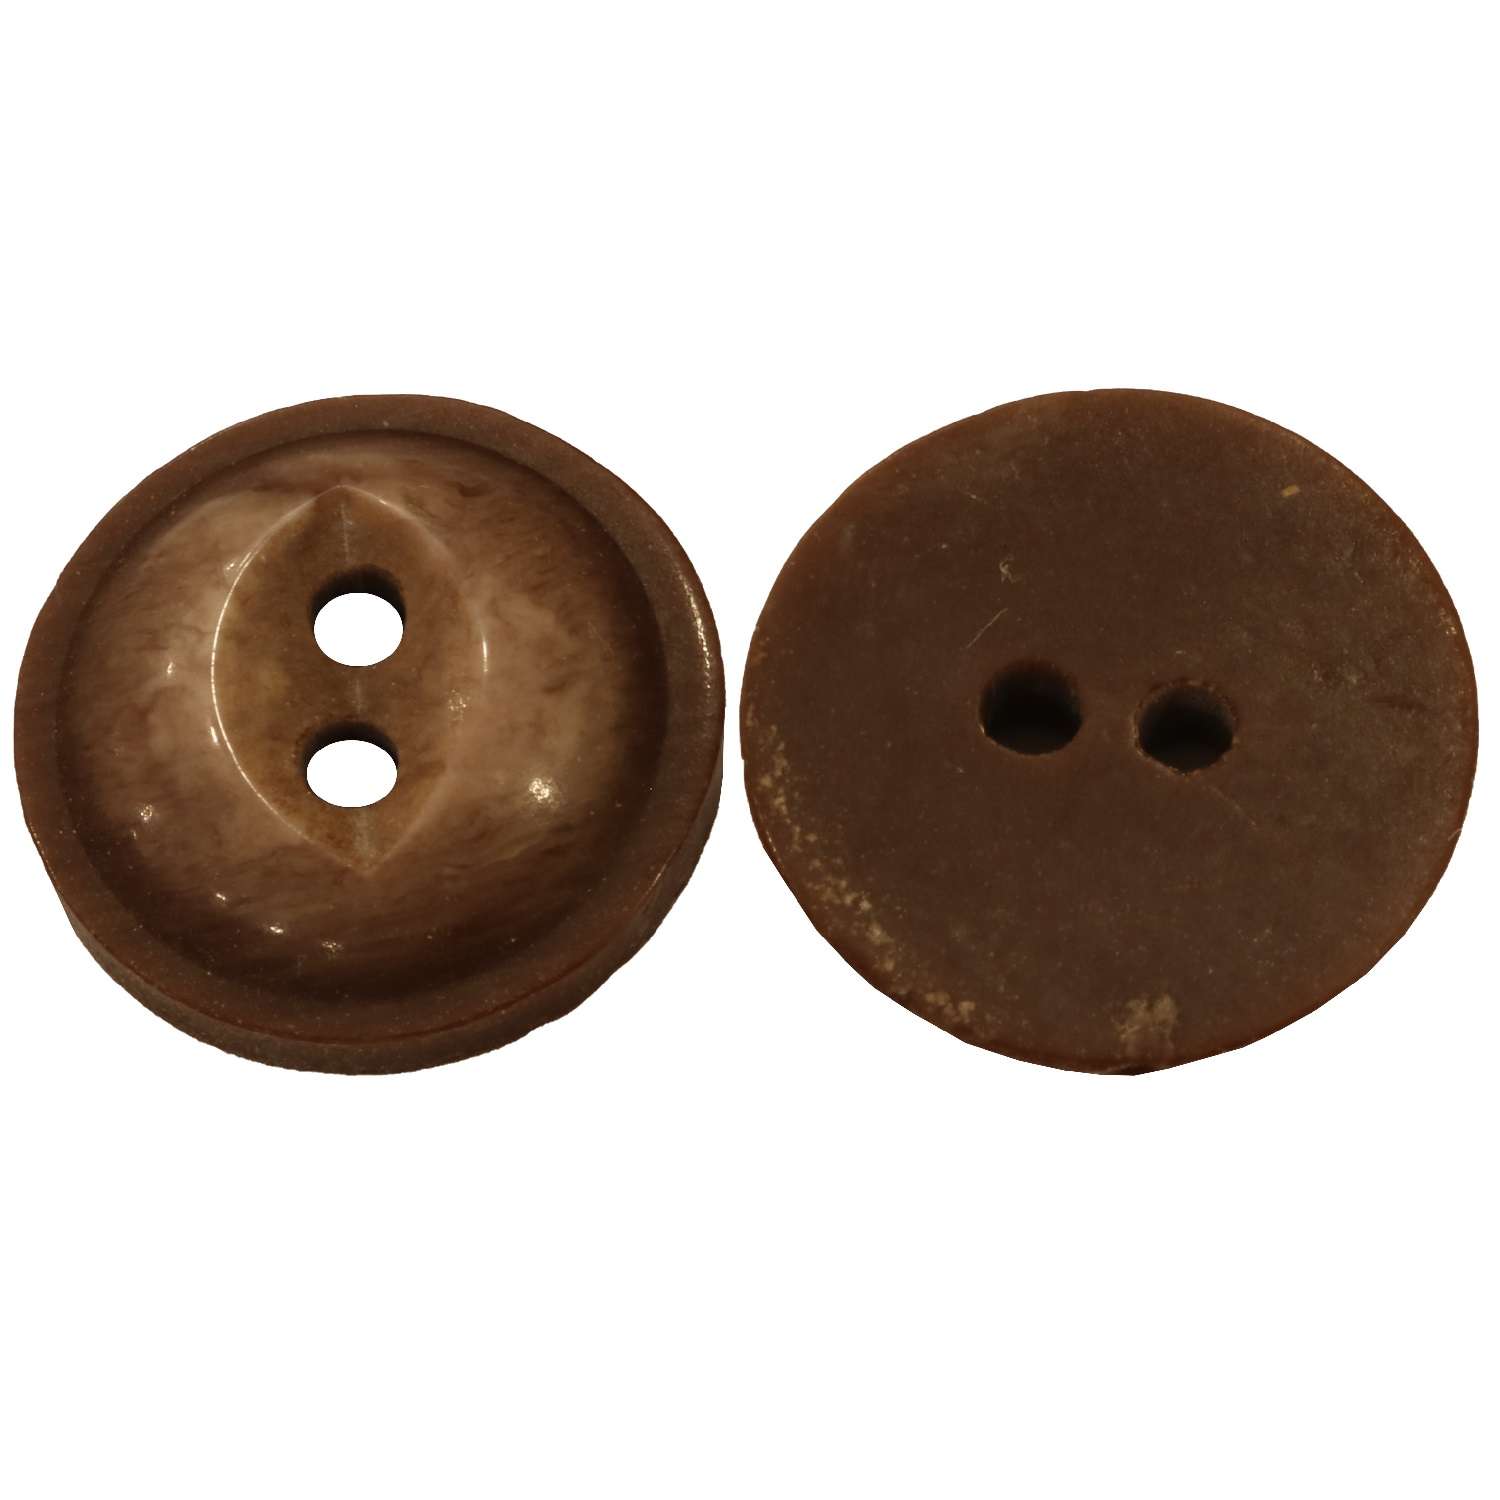 Διάφορα Κουμπιά Part 2 03BTNQ - Plastic Milky Coffe - Brown 15 mm